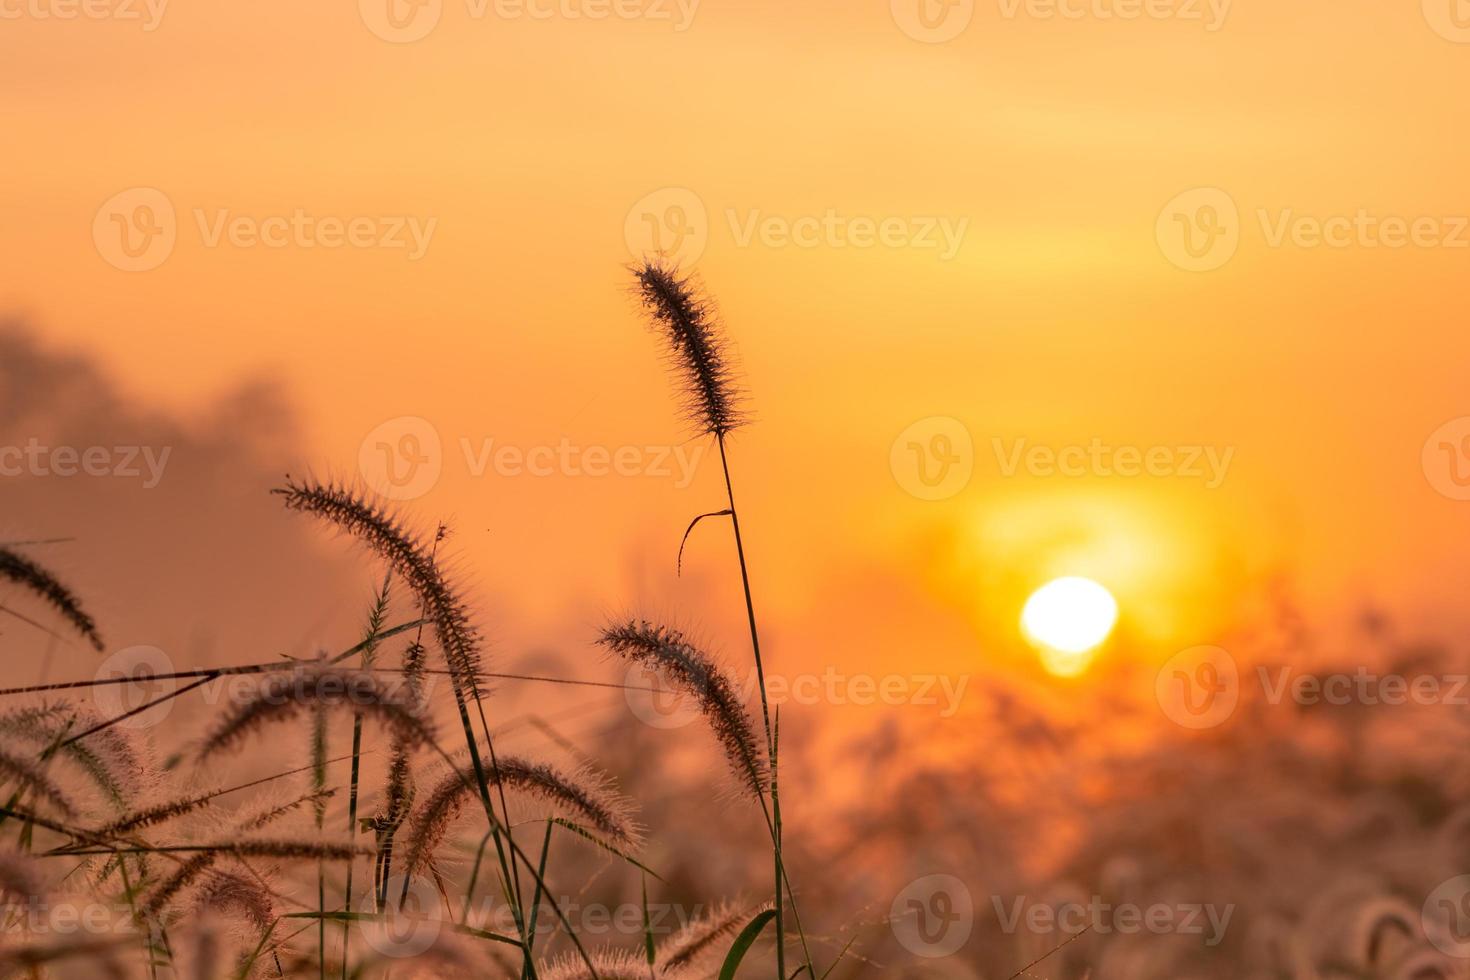 grasbloem in de ochtend bij zonsopgang met gouden zonneschijn. bloemenveld op het platteland. oranje weide achtergrond. wilde weide gras bloemen met ochtendzon. begin nieuwe dag of nieuw leven concept. foto